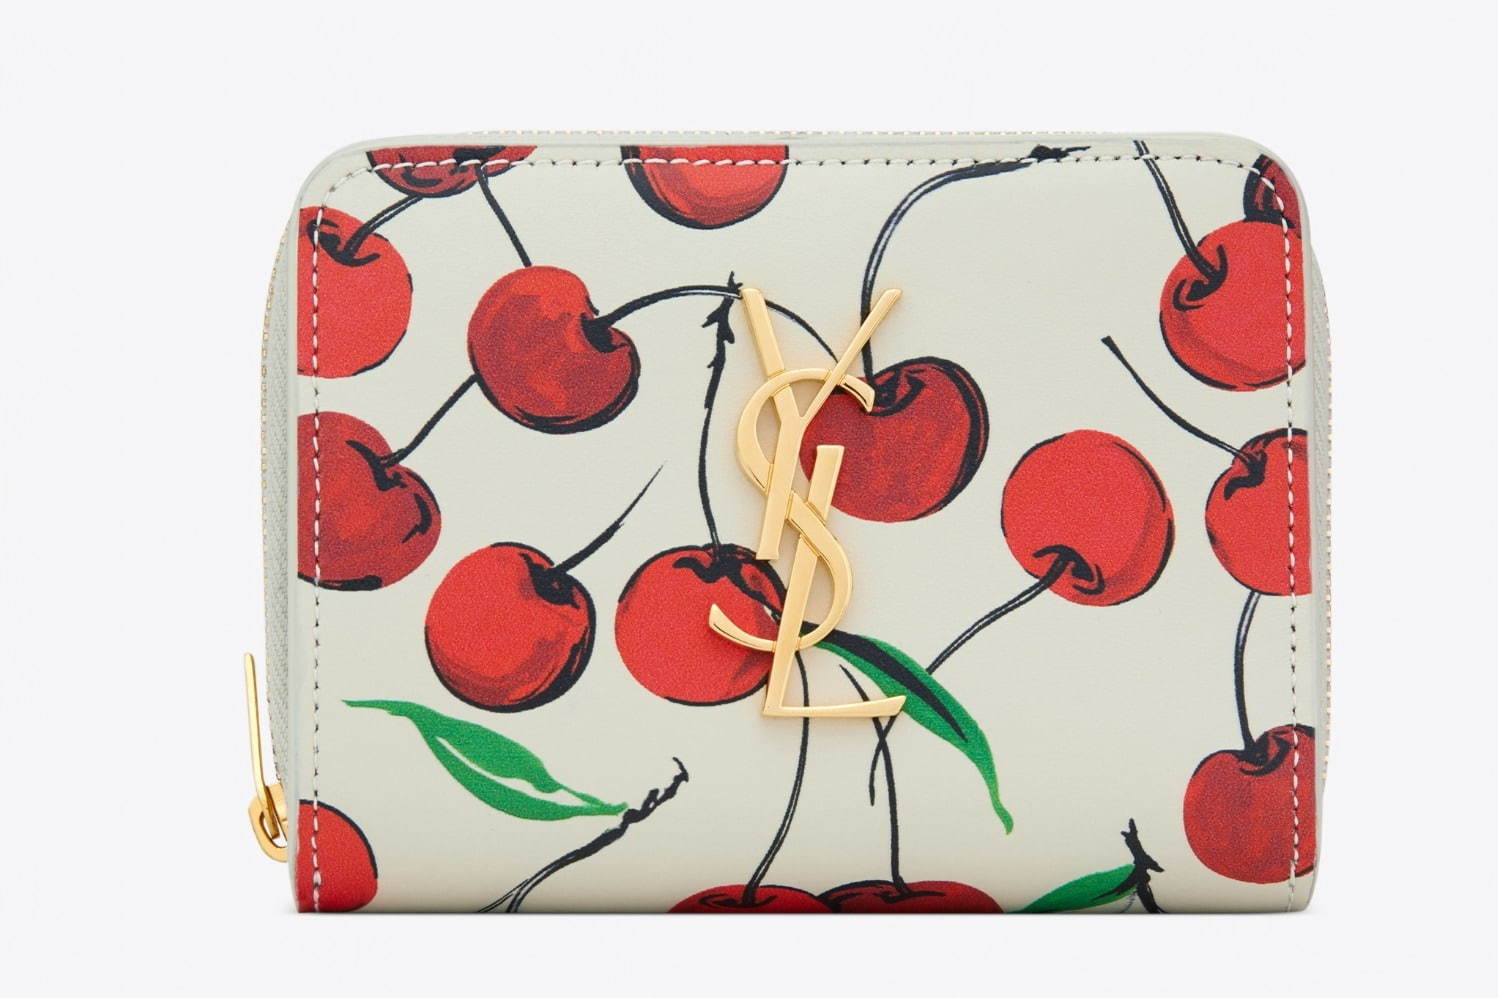 サンローラン 真っ赤なチェリー柄 ミニ財布やiphoneケース 日本限定で発売 ファッションプレス